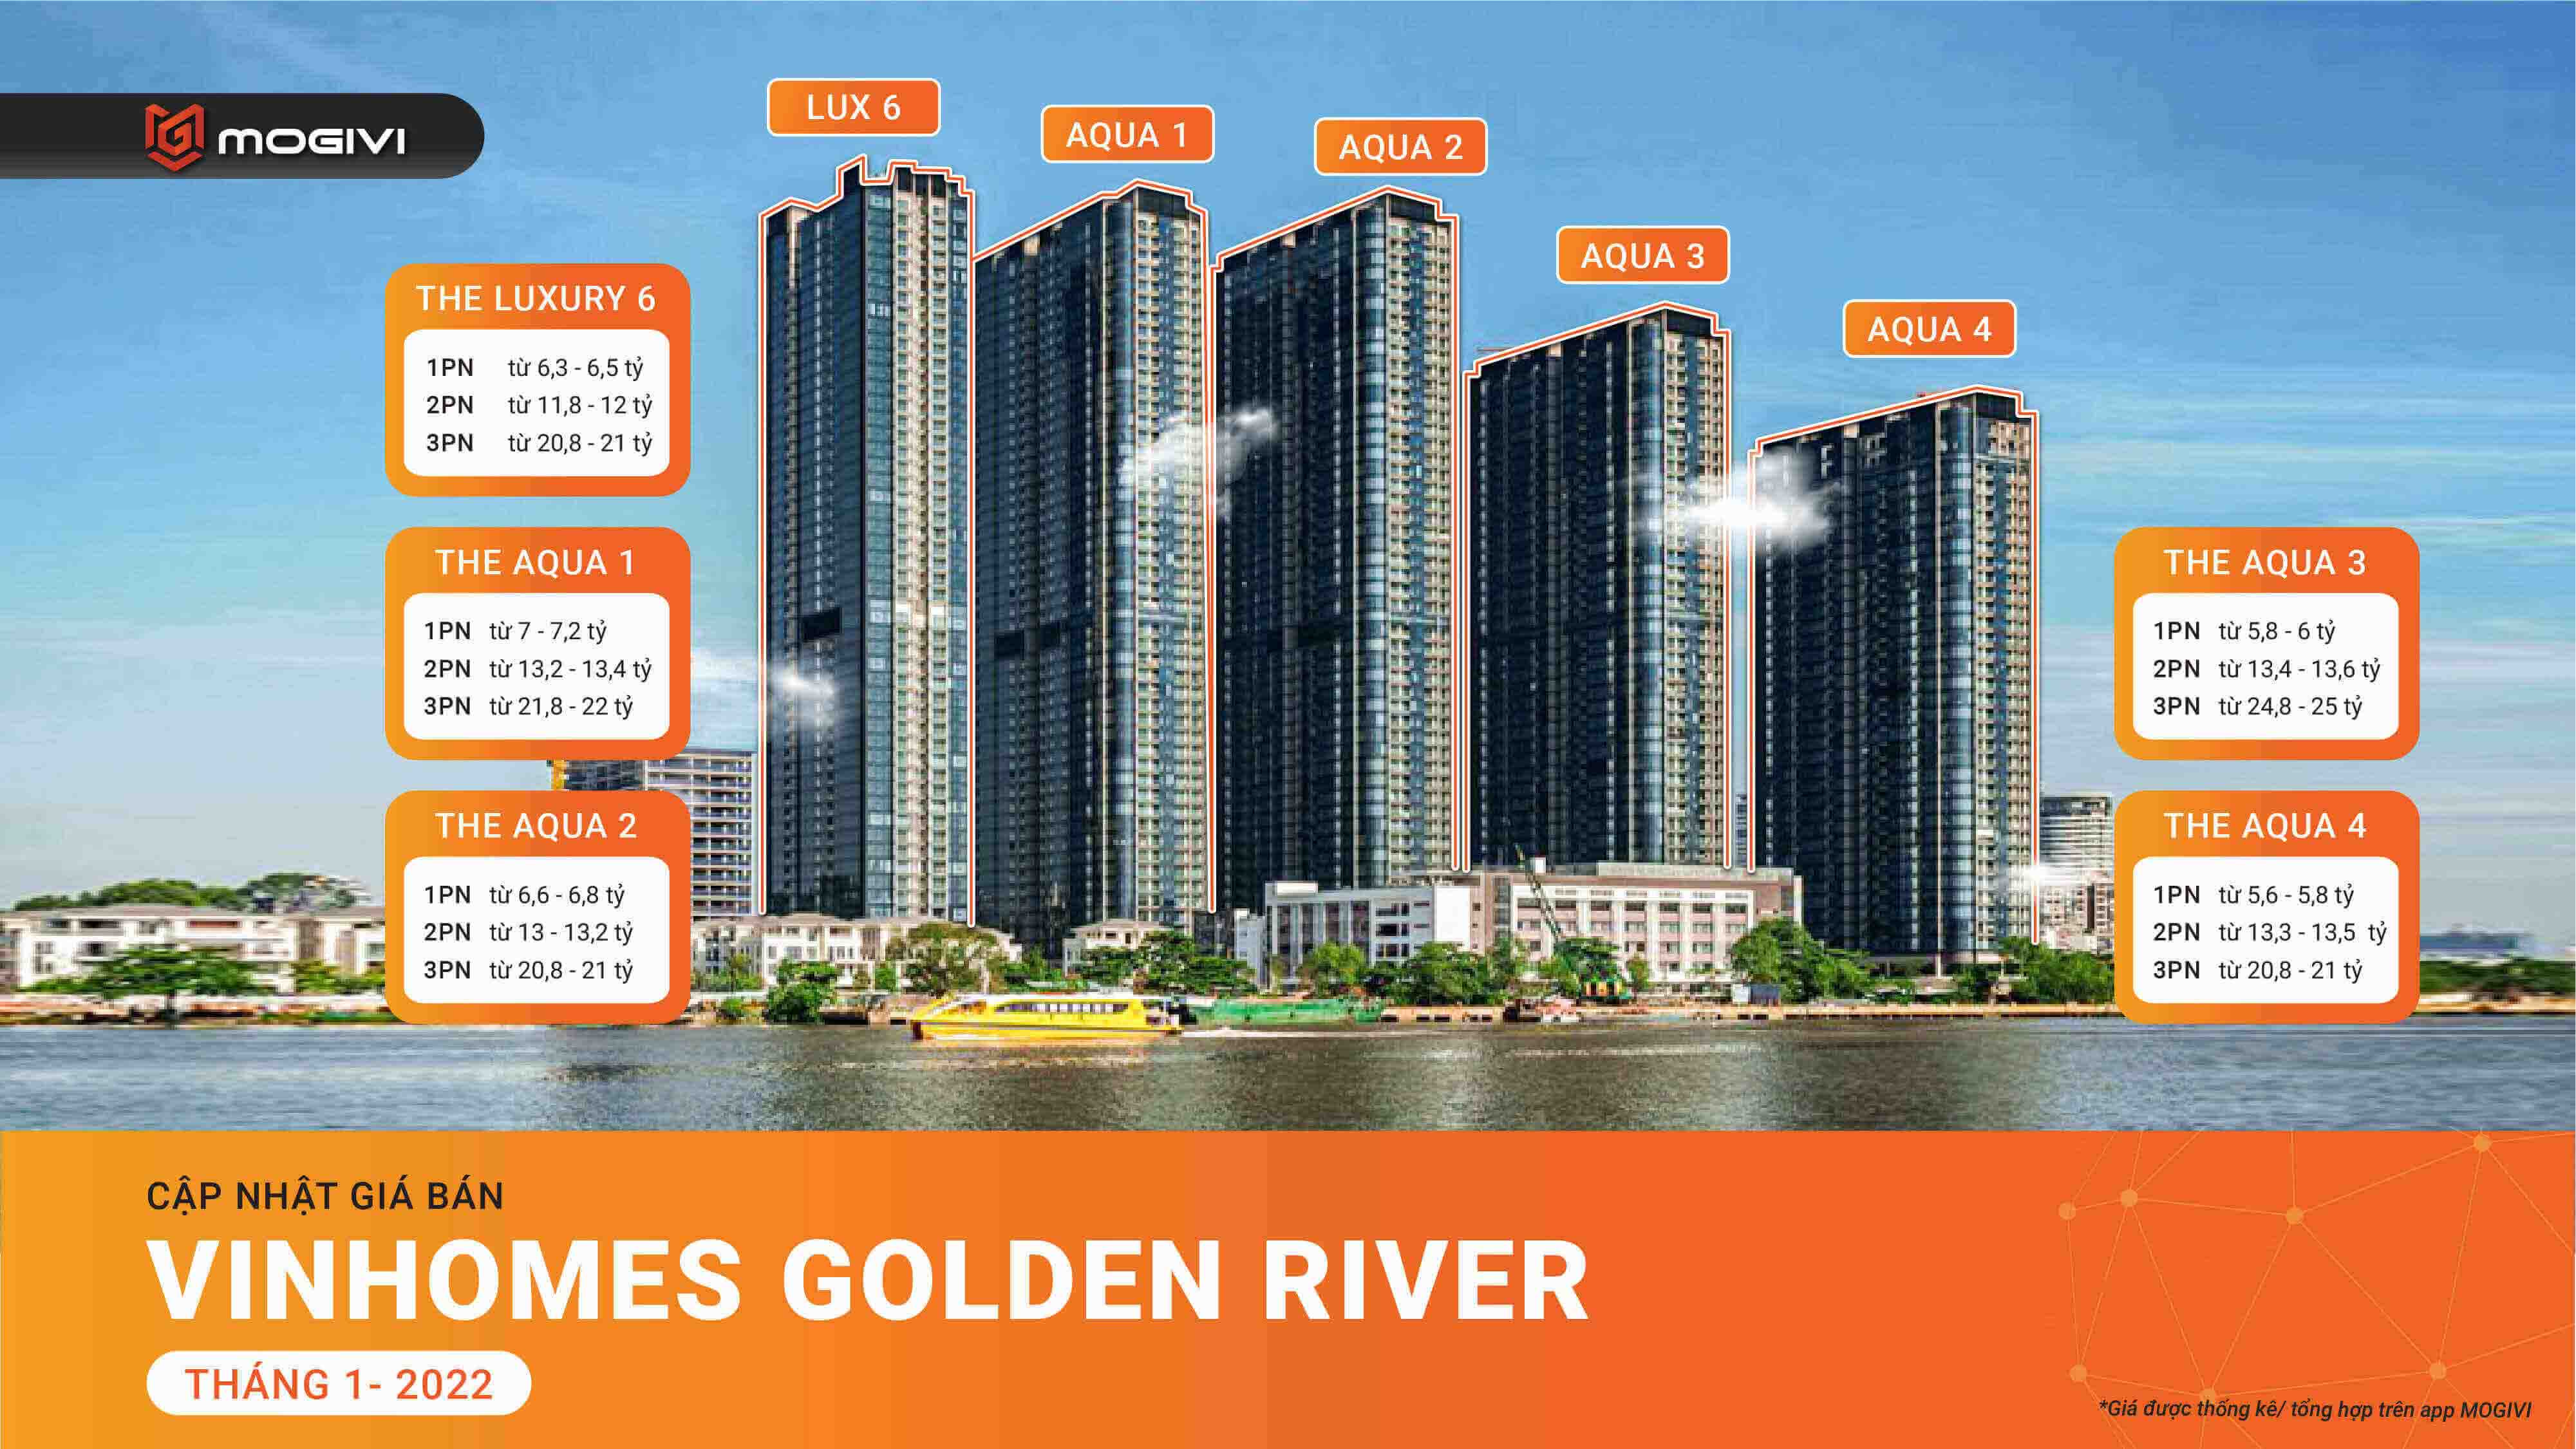 Giá bán chính xác và mới nhất của dự án căn hộ Vinhomes Golden River do Mogivi cập nhật